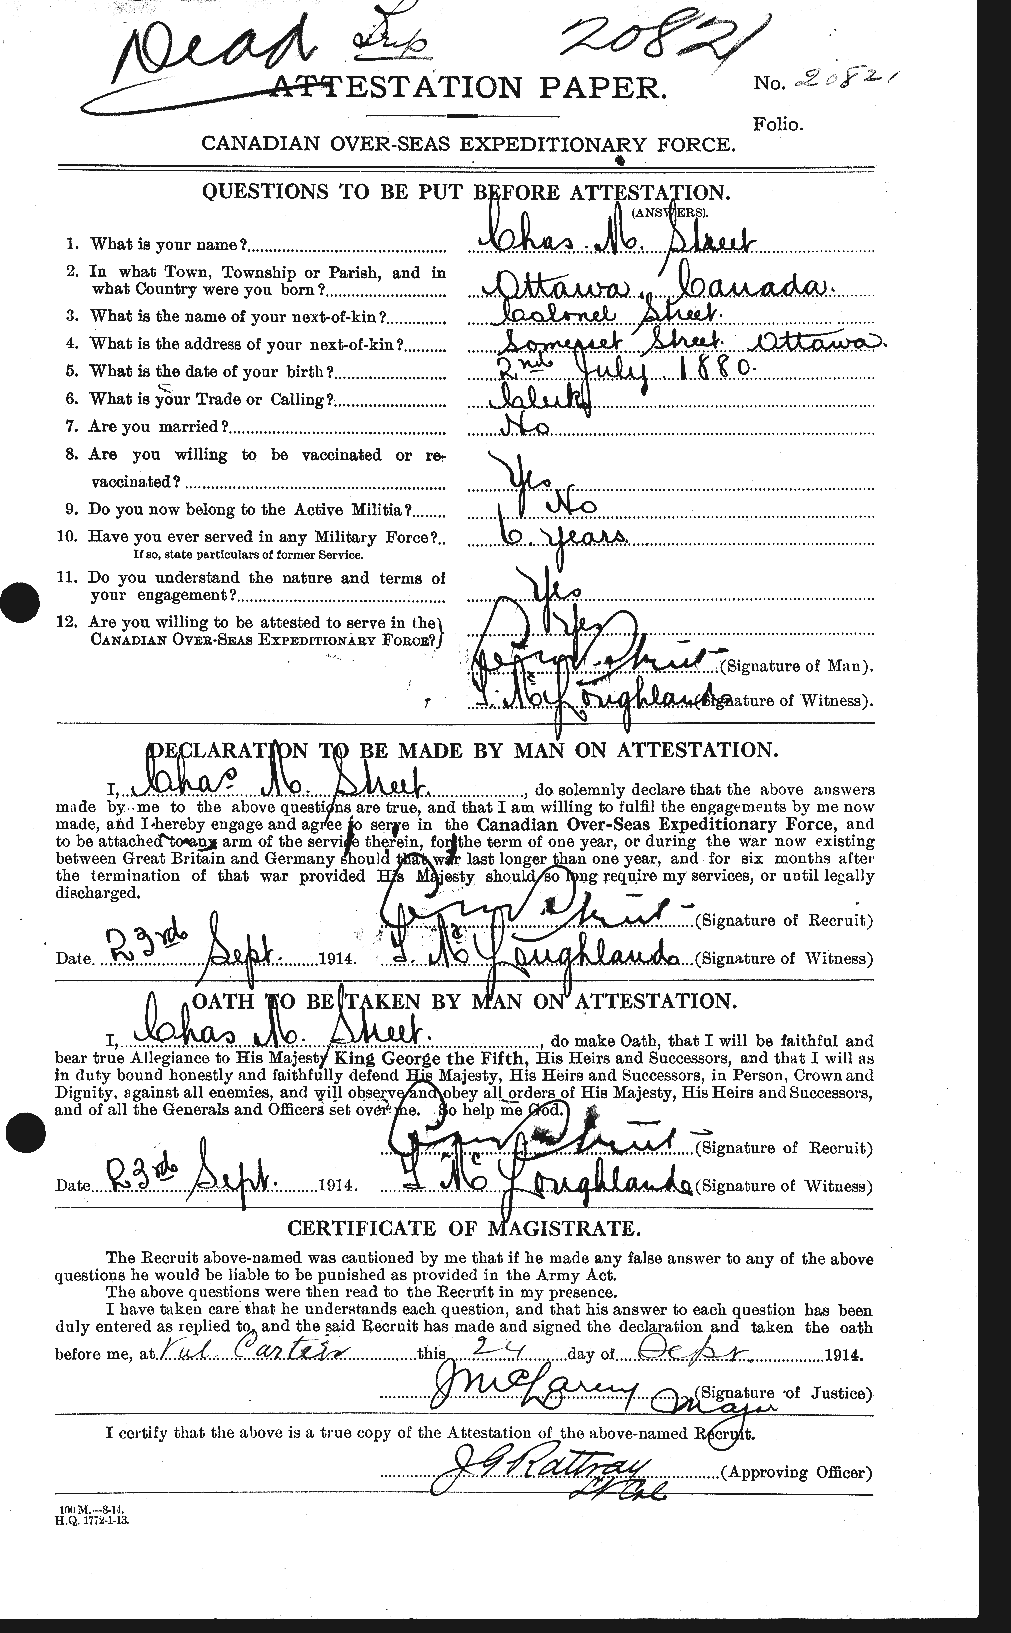 Dossiers du Personnel de la Première Guerre mondiale - CEC 126235a